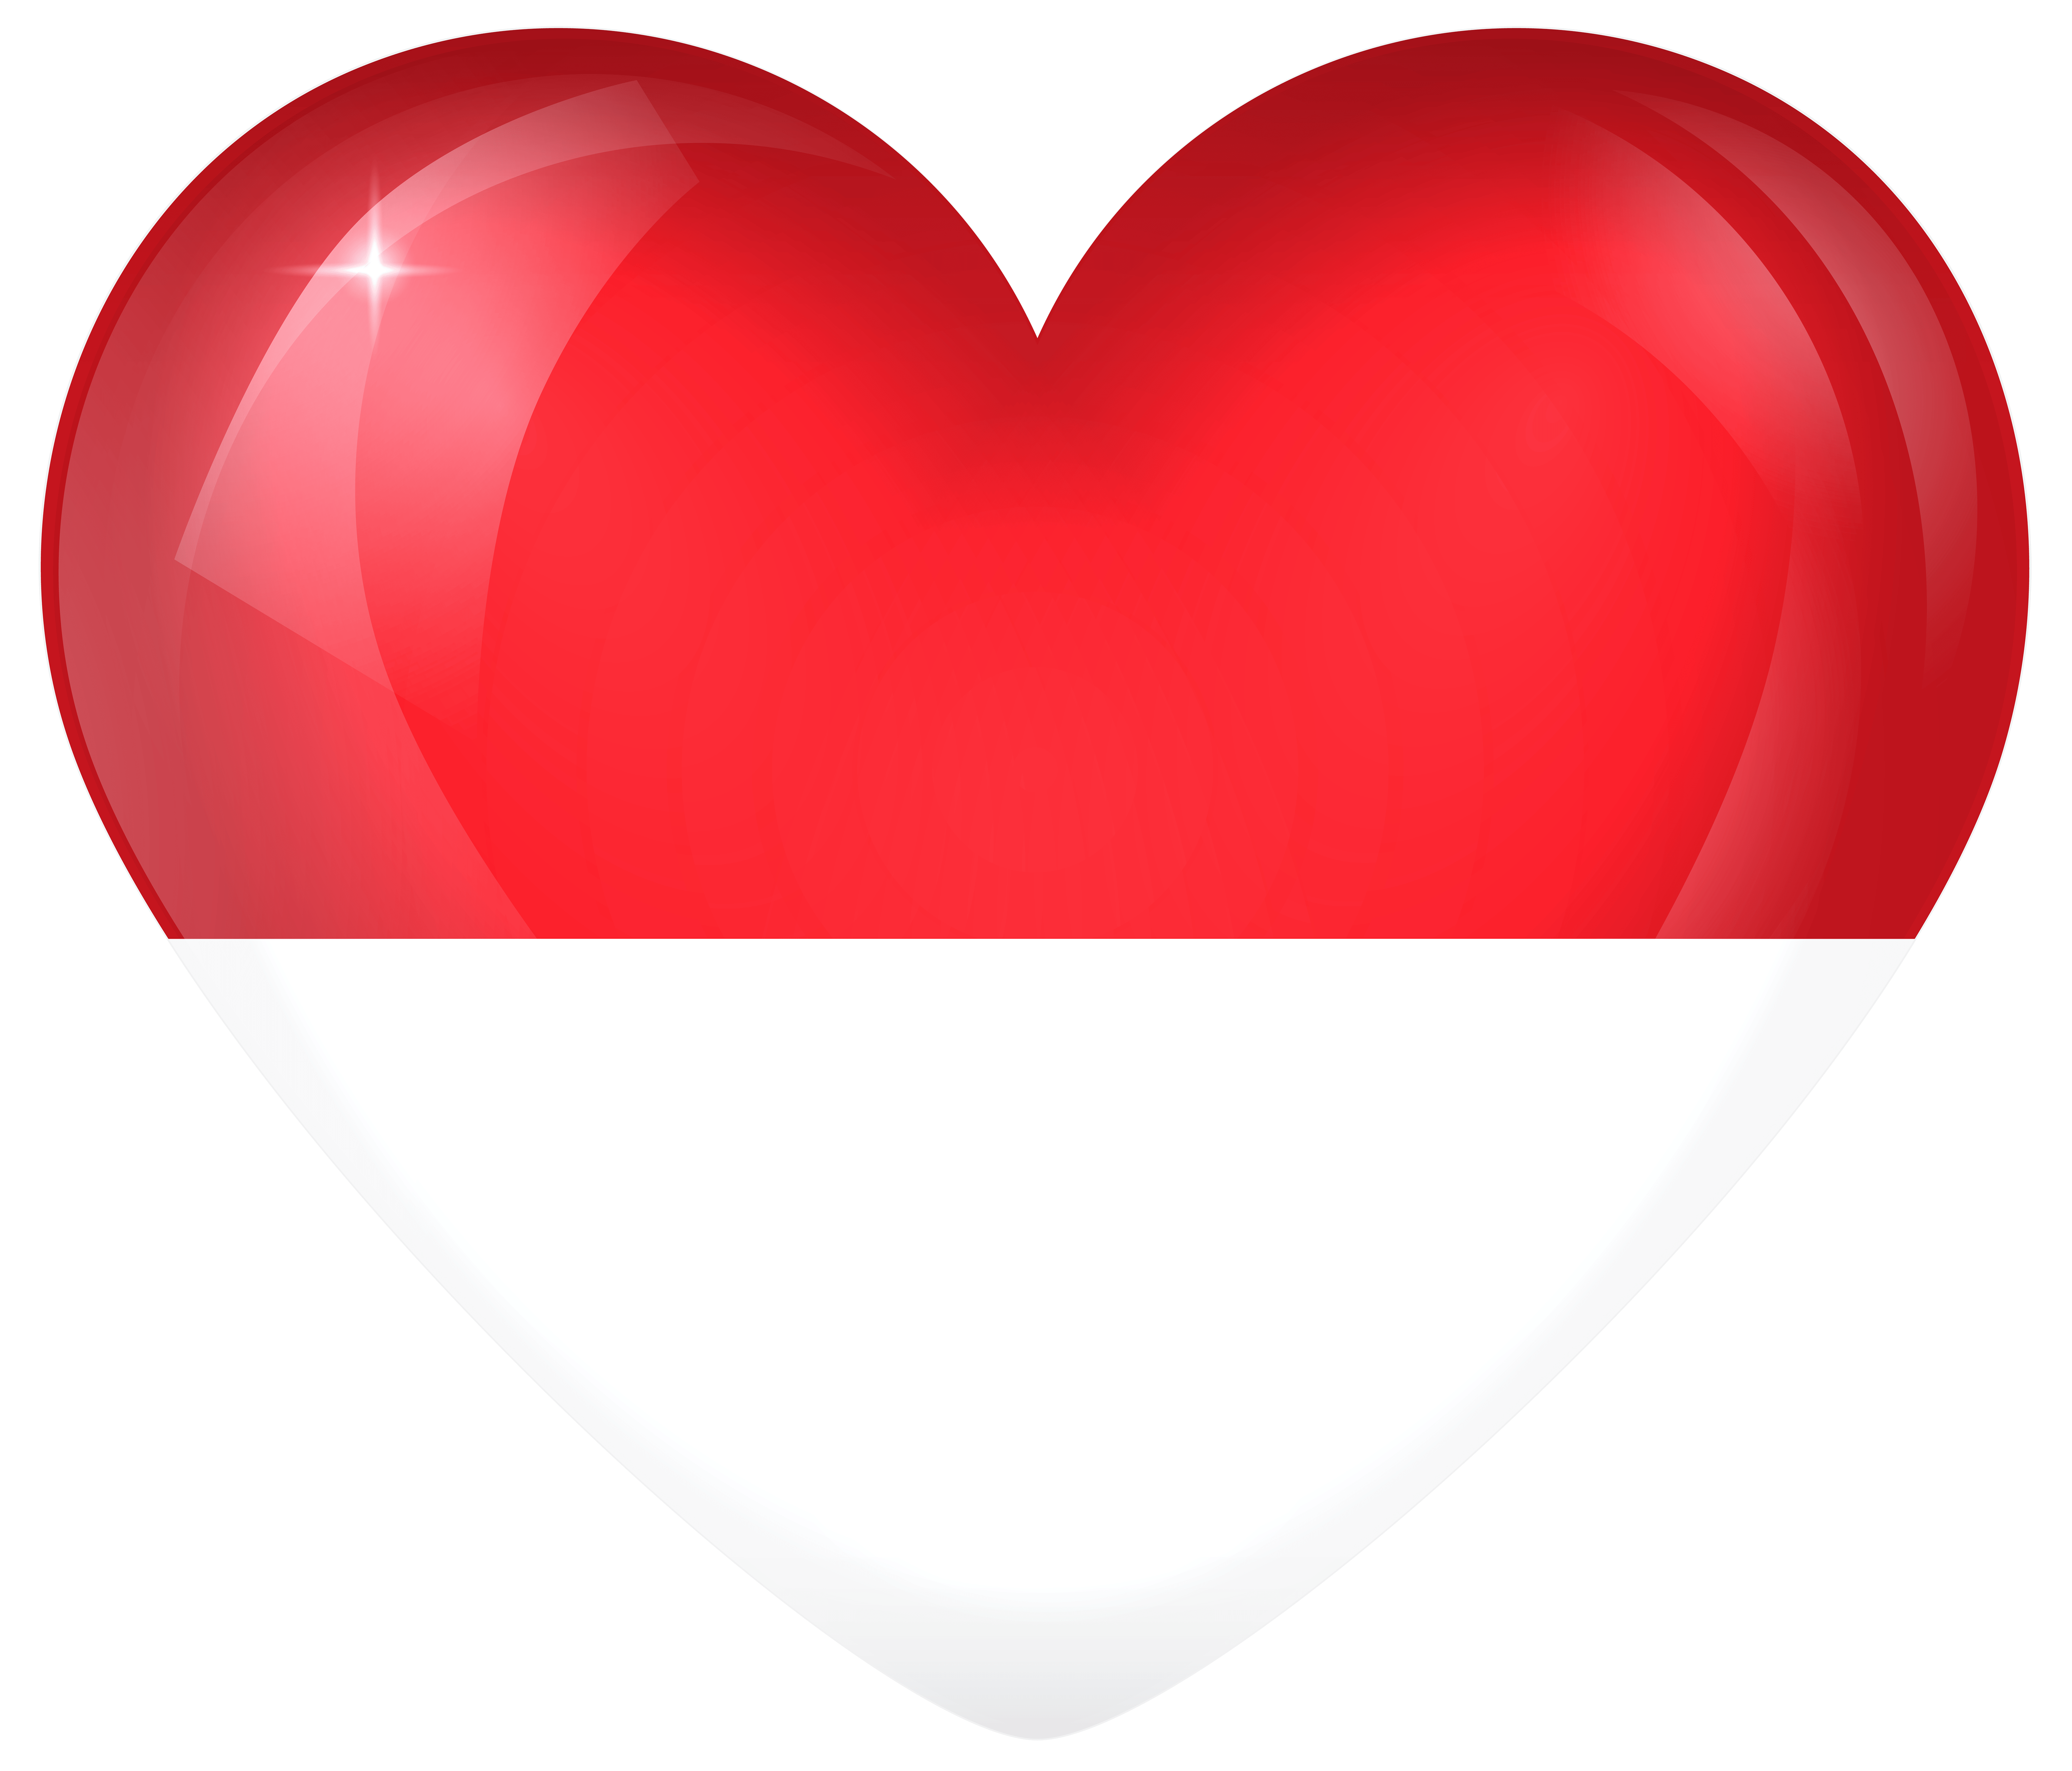 Monaco Large Heart Flag